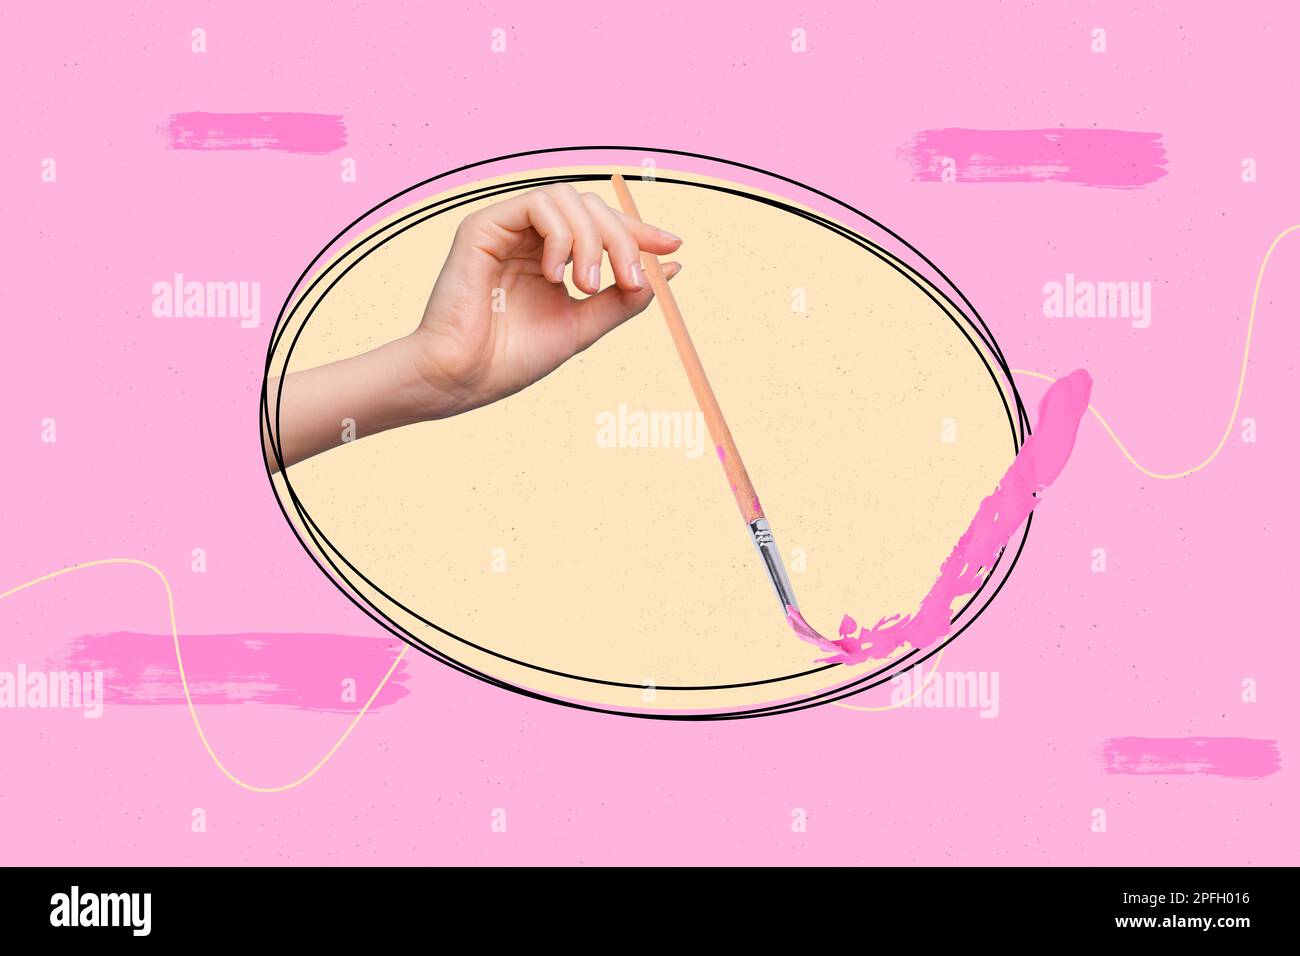 Foto banner collage concettuale della creatività pennello disegno colori rosa hobby capolavoro illustrazione immagine isolata su sfondo dipinto Foto Stock